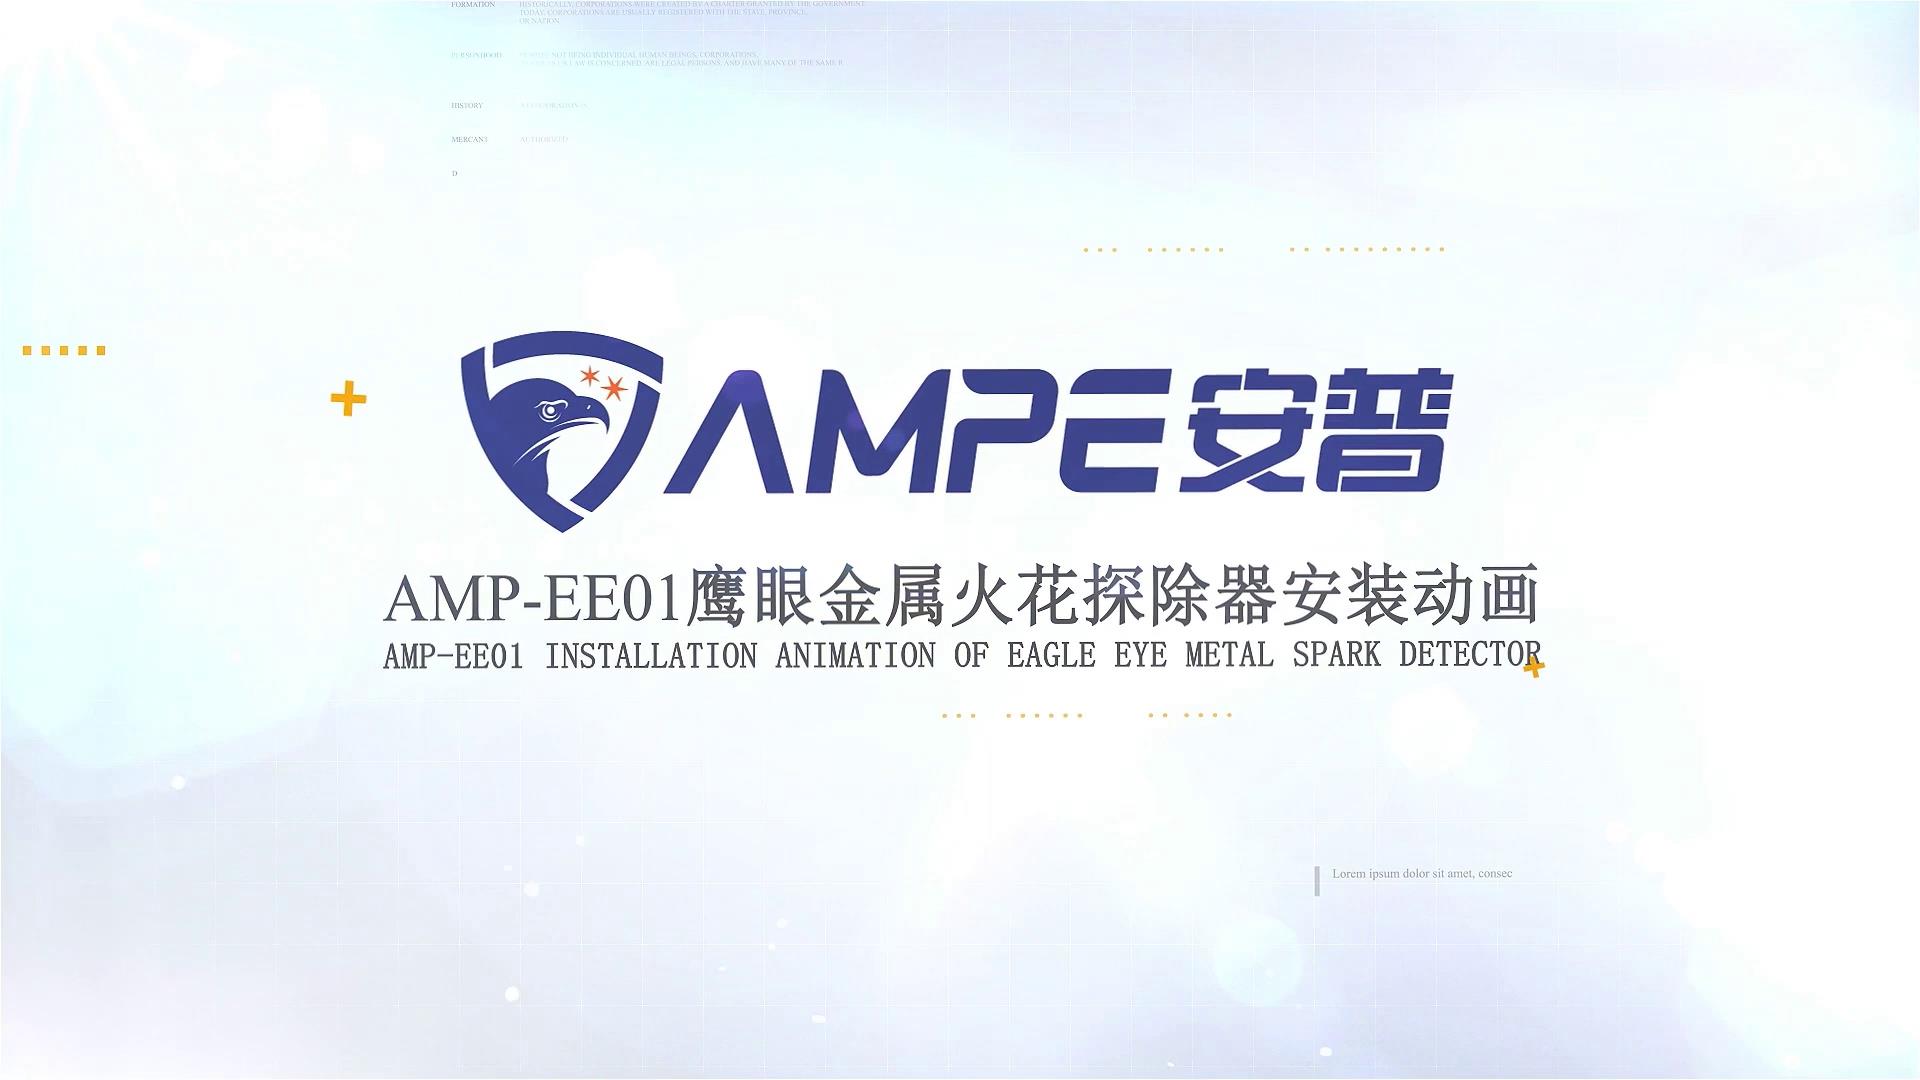 AMPEE01鹰眼金属火花探除器安装动画视频